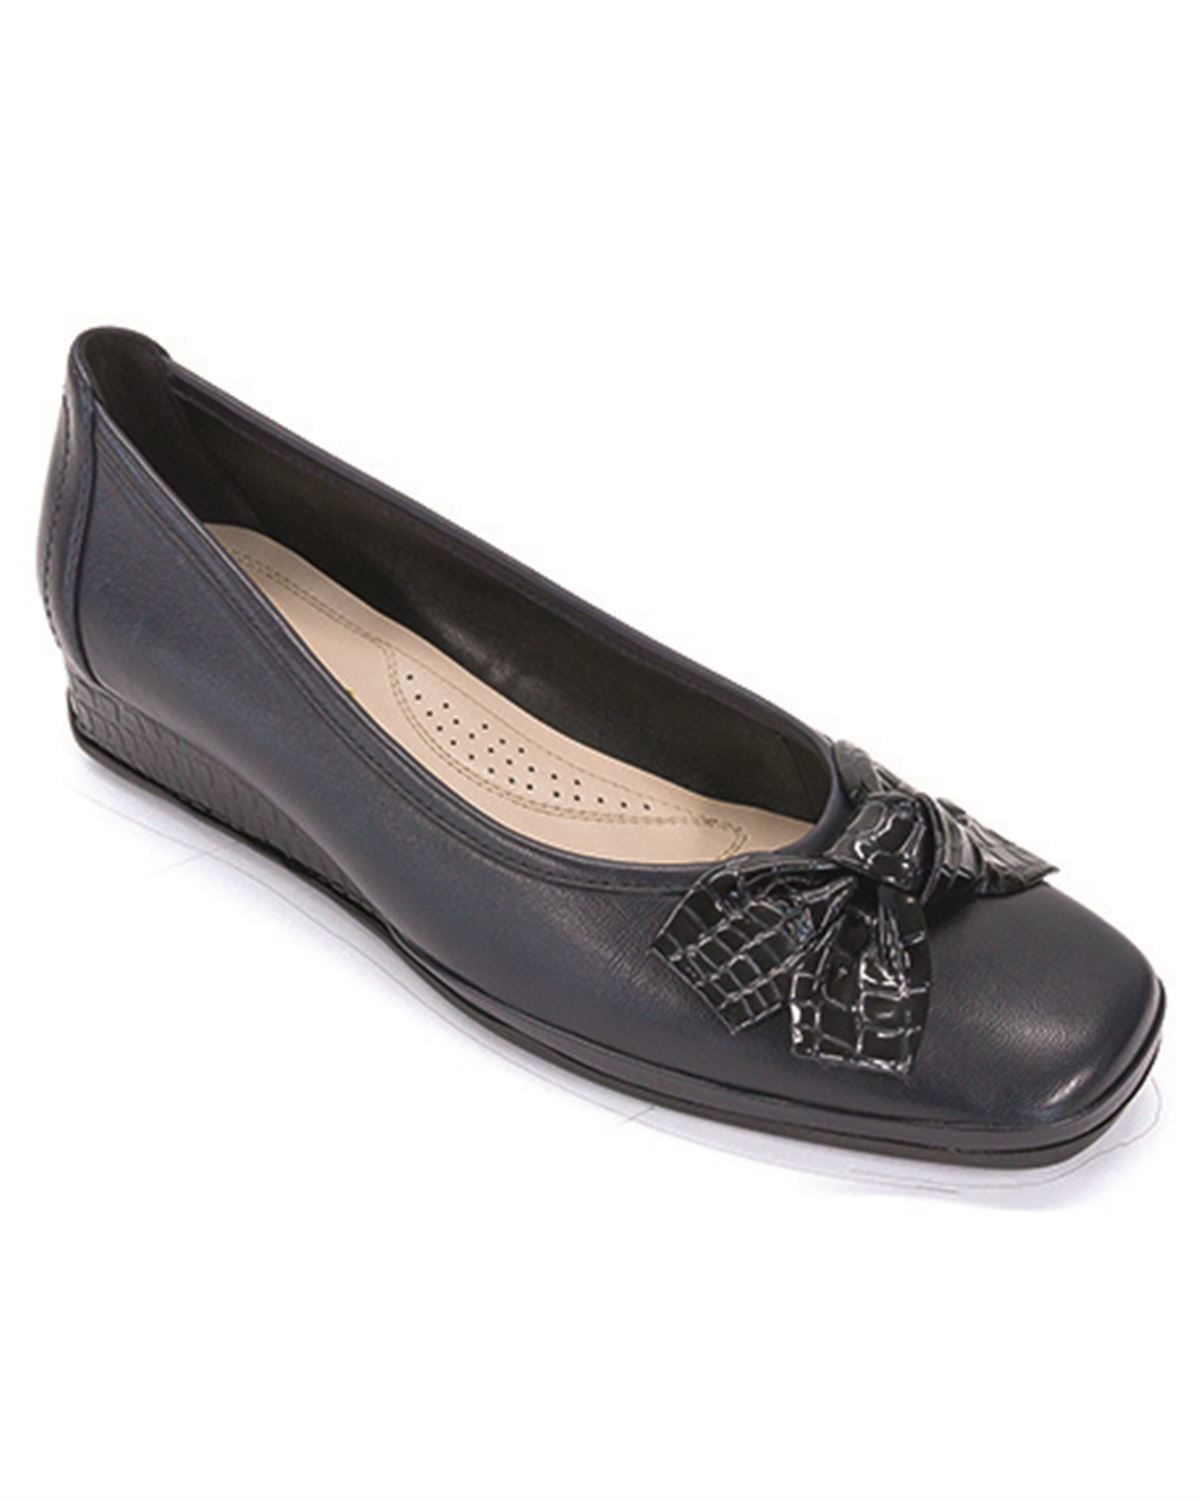 Ladies Van Dal Barbados II Shoe. Sizes 3-8 incl ½ sizes.